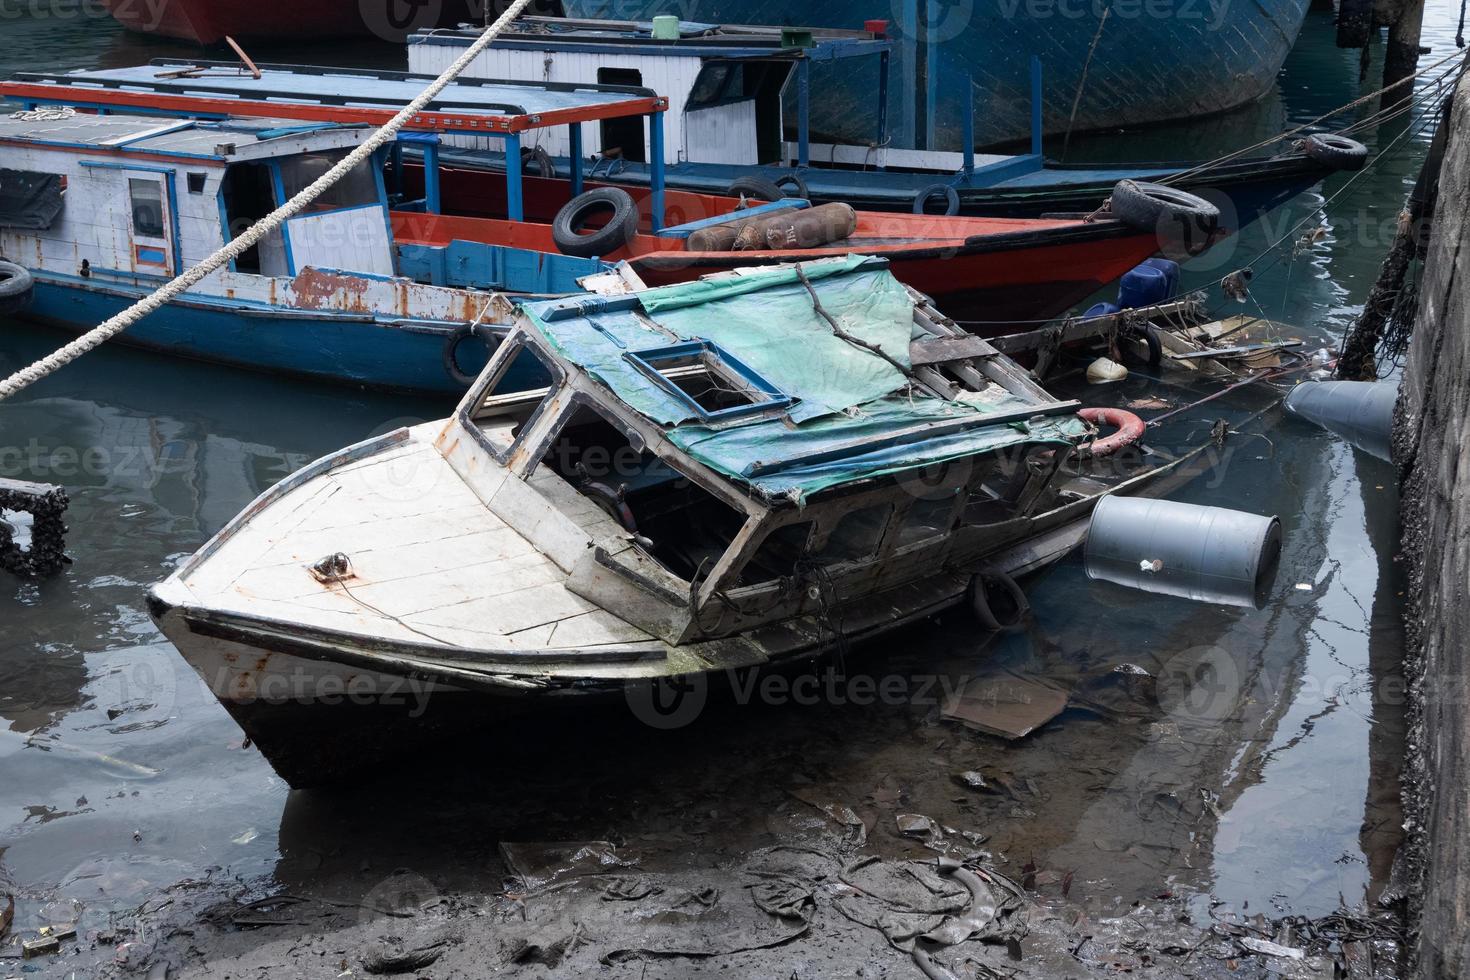 selektiv fokus på fiske båtar den där sjönk på de strand, skadad fartyg blev skräp på hav foto